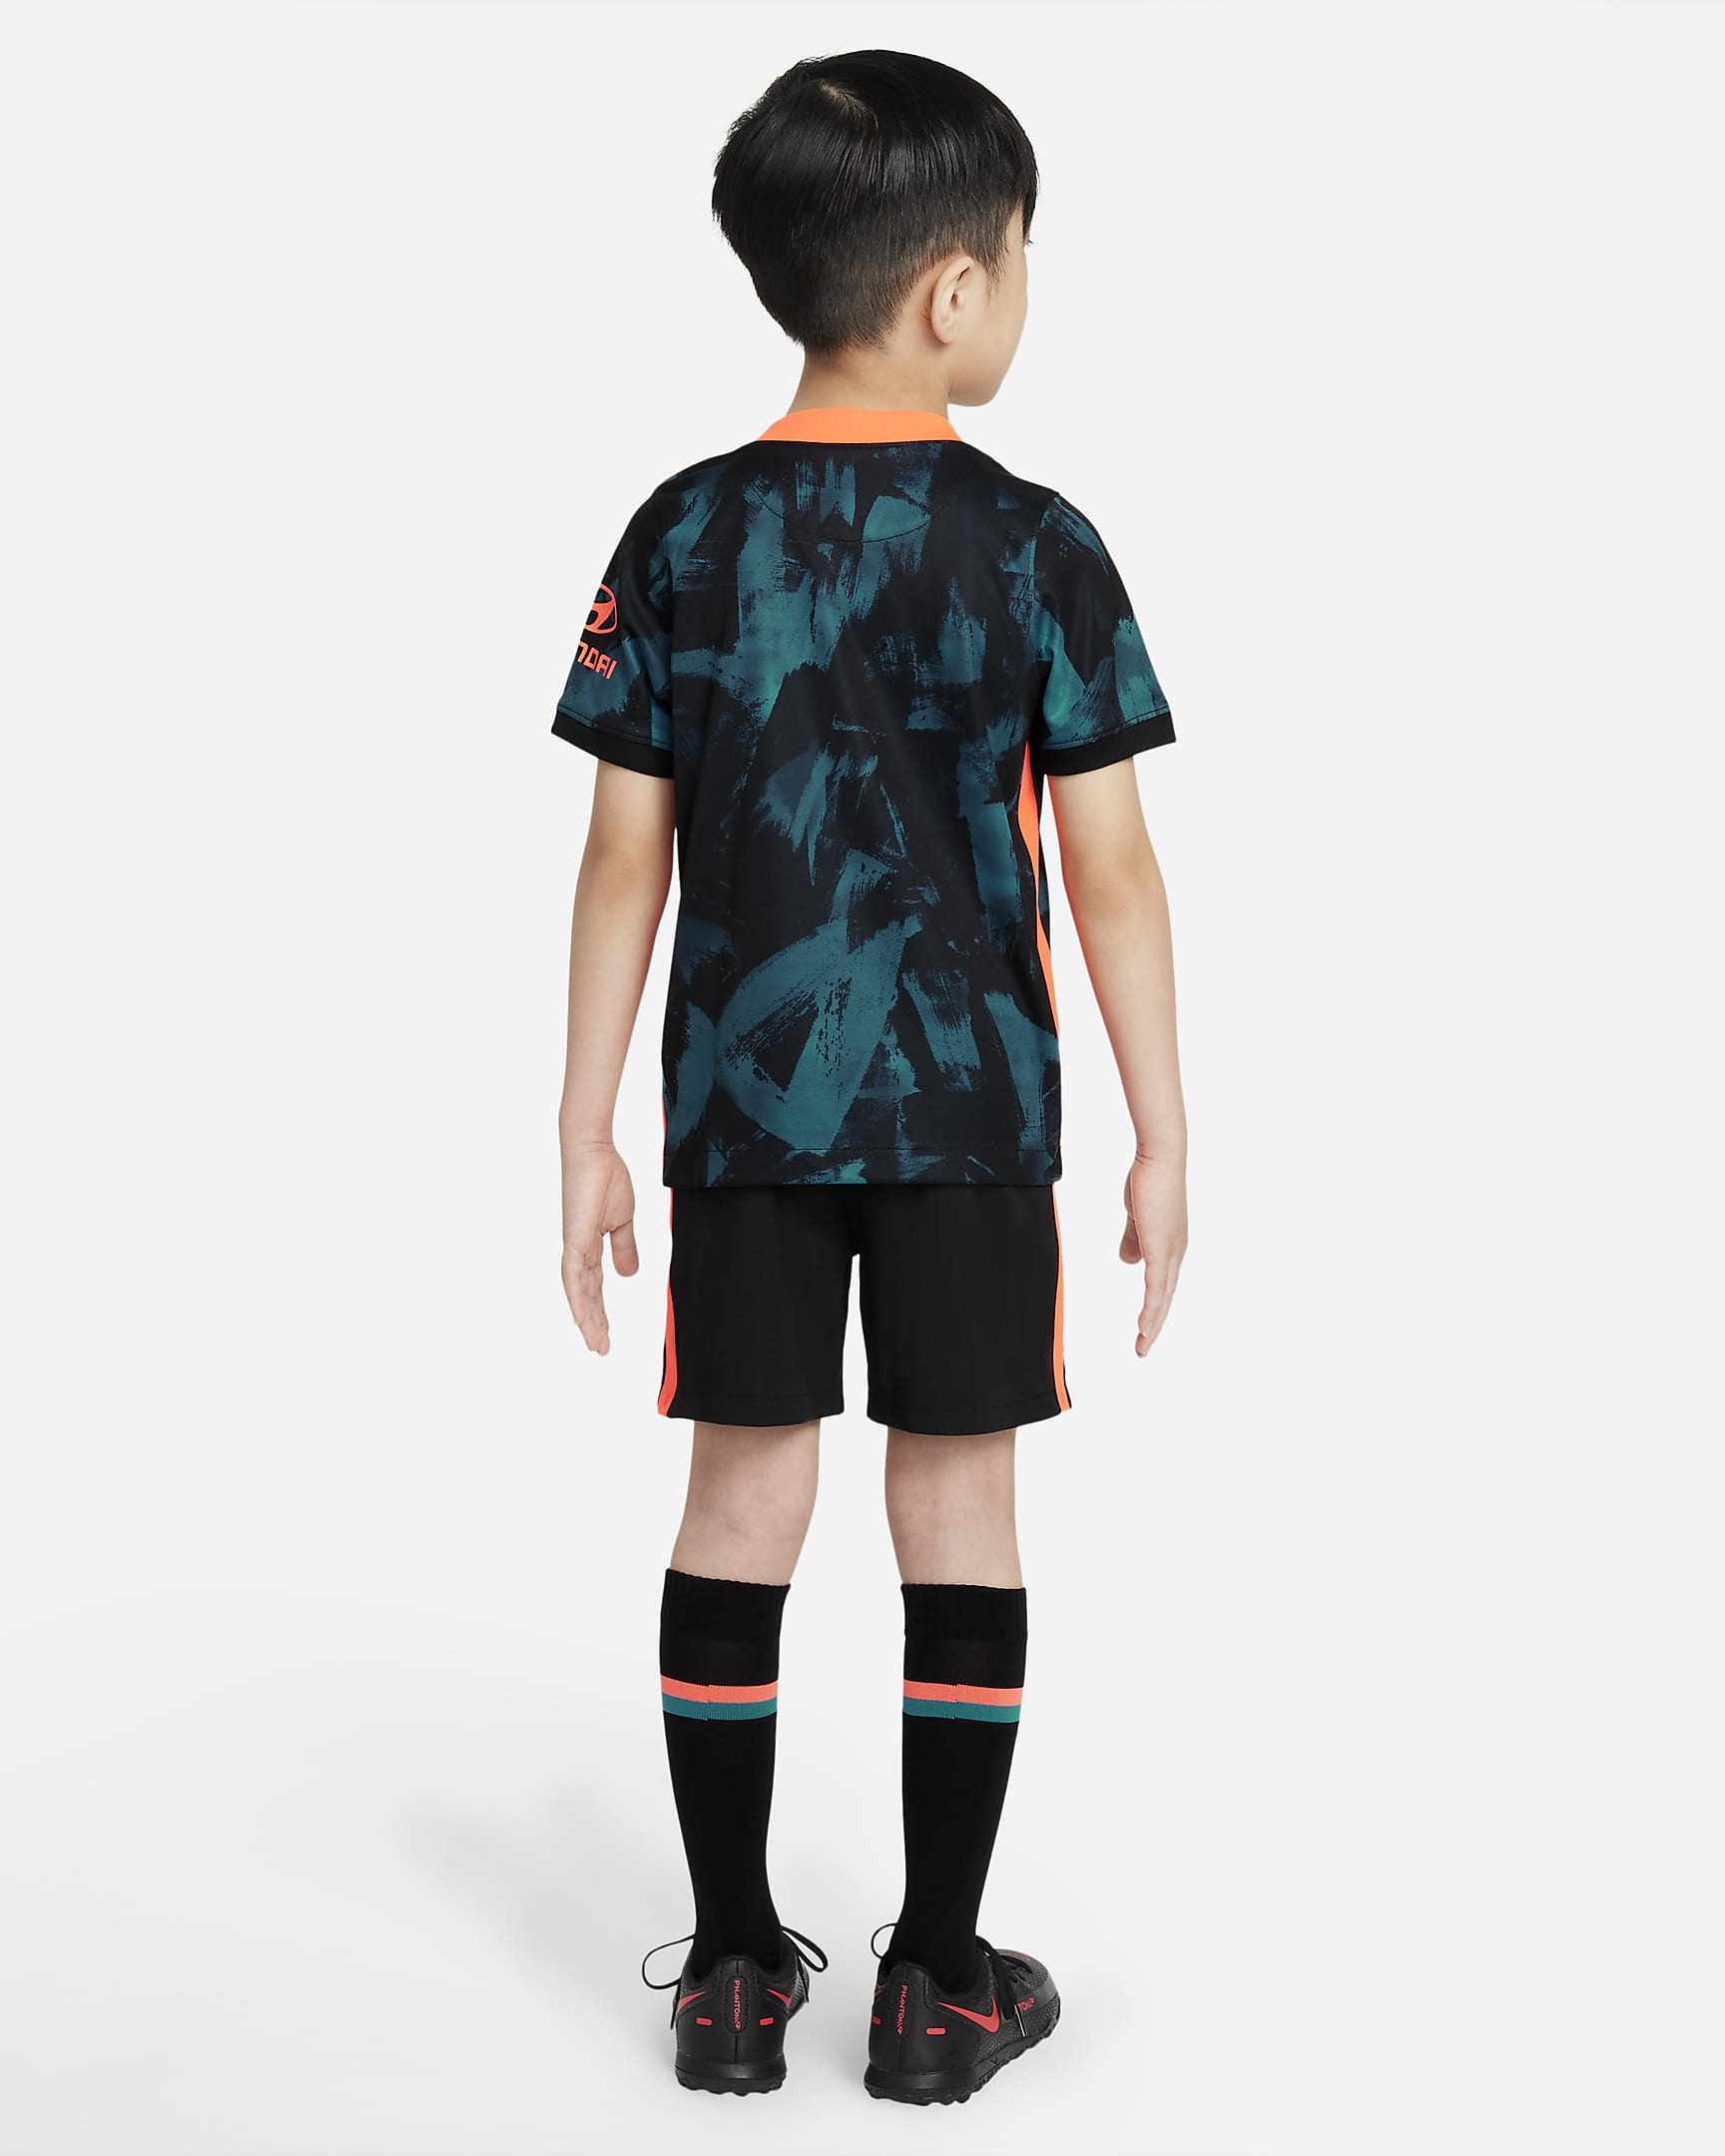 Chelsea FC 2021/22 Third Little Kids' Soccer Kit. Nike.com